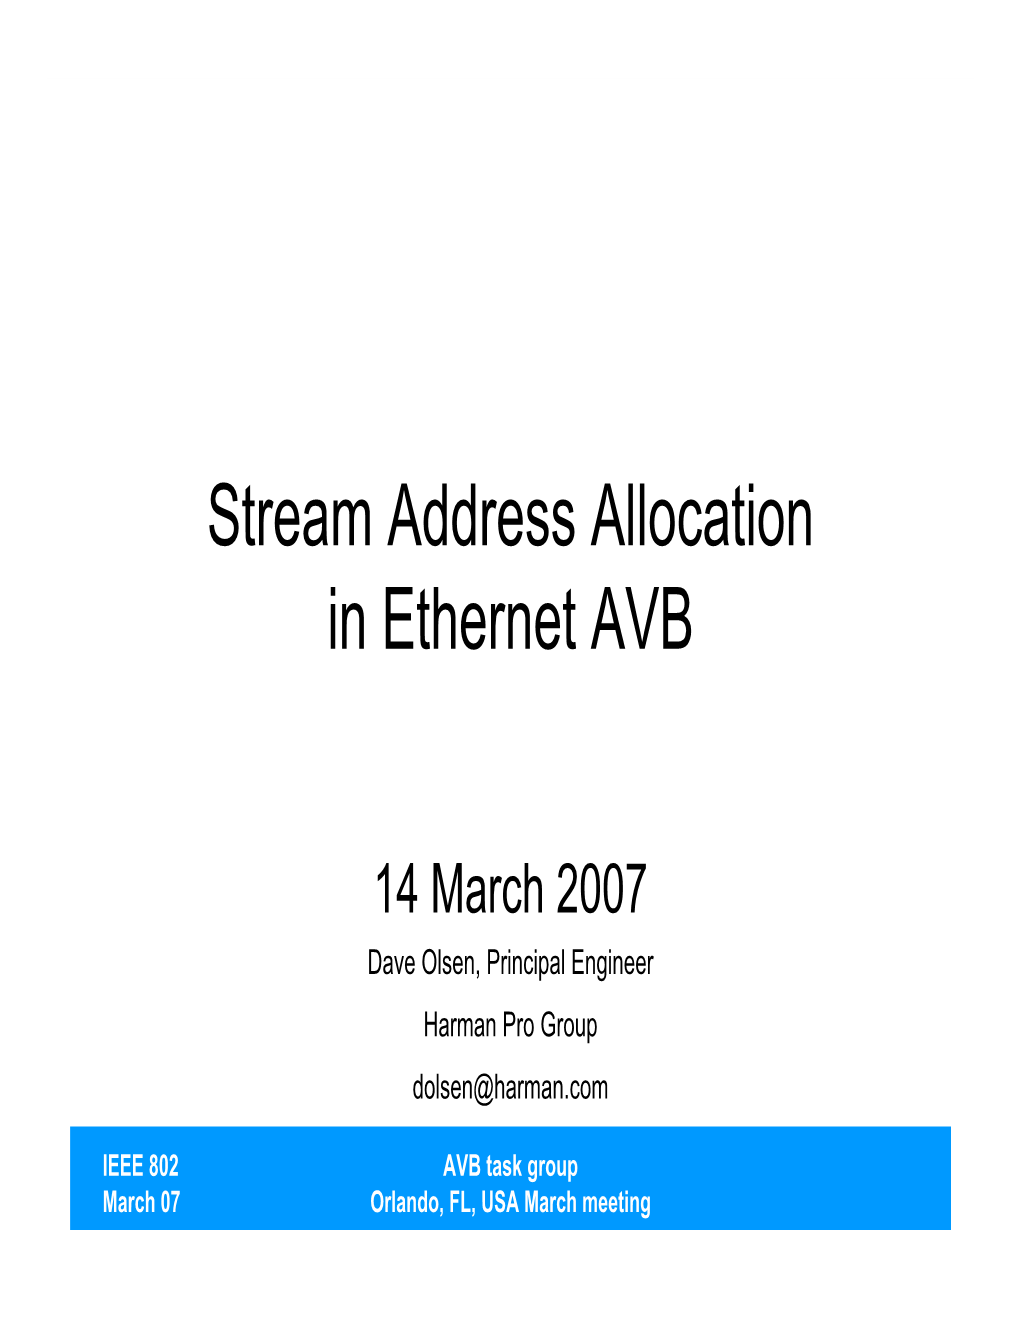 Stream Address Allocation in Ethernet AVB